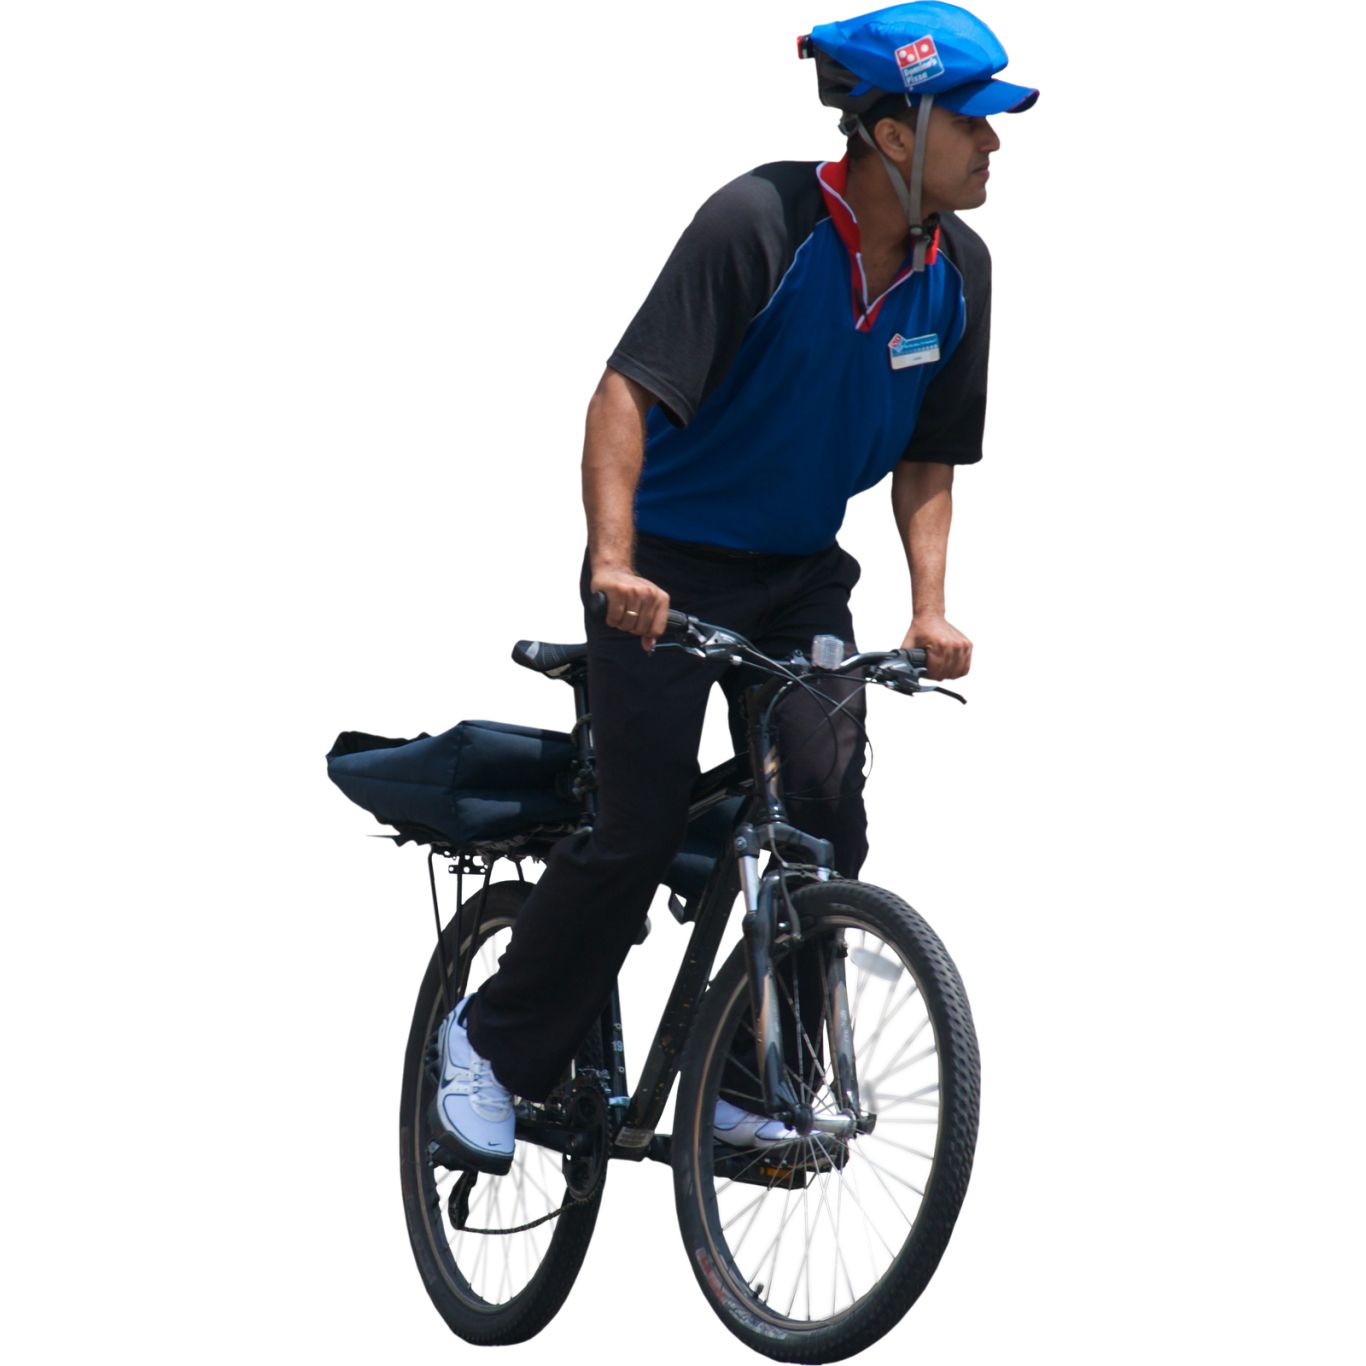 Man on bicycle PNG image    图片编号:5371